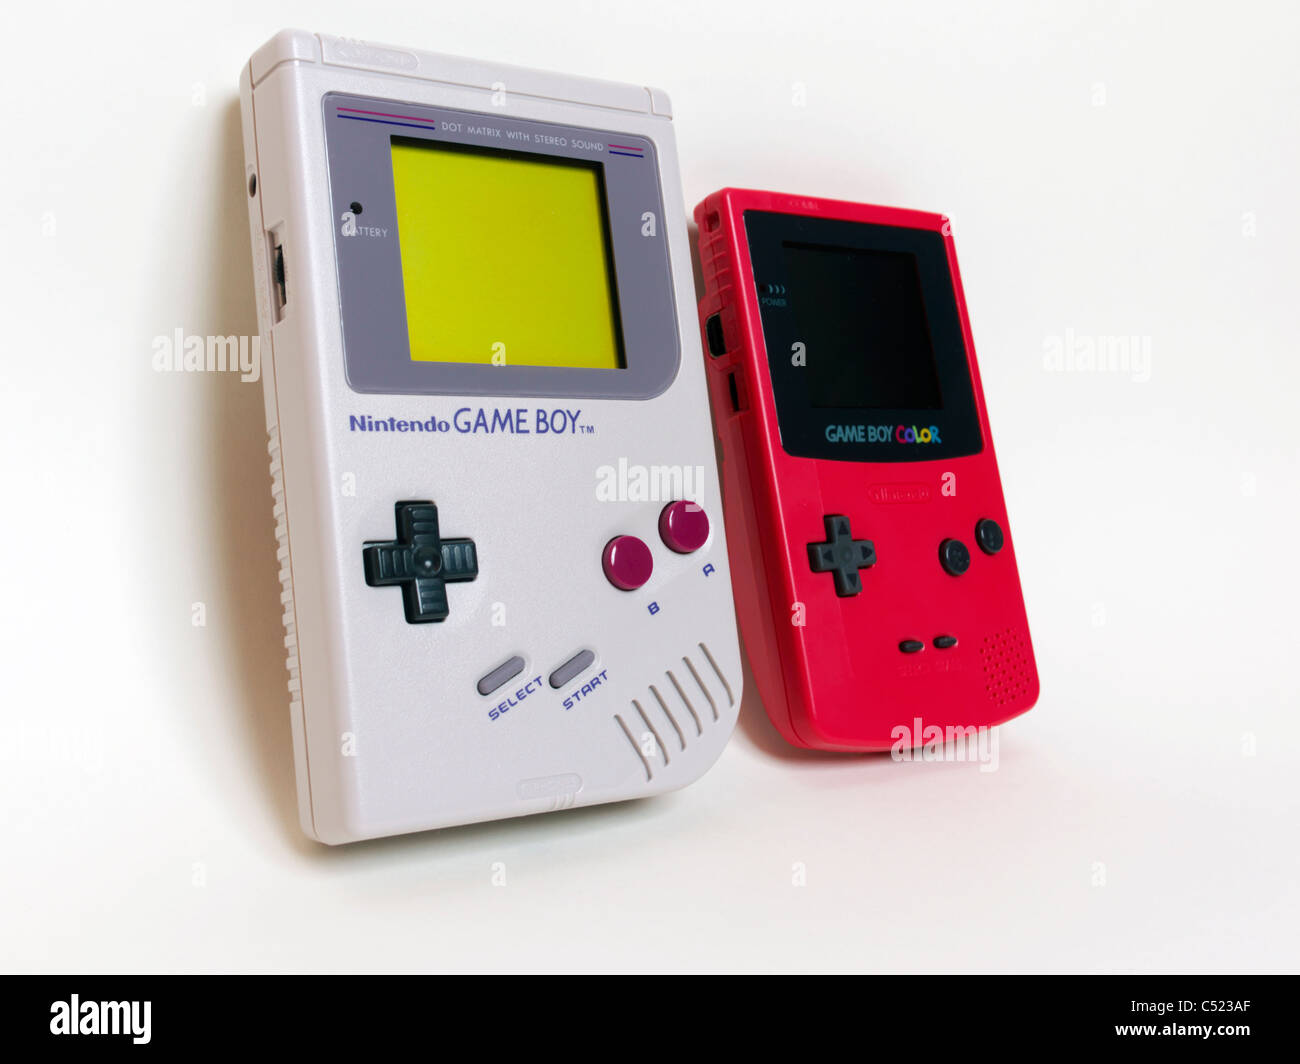 GameBoy Color - Nintendo